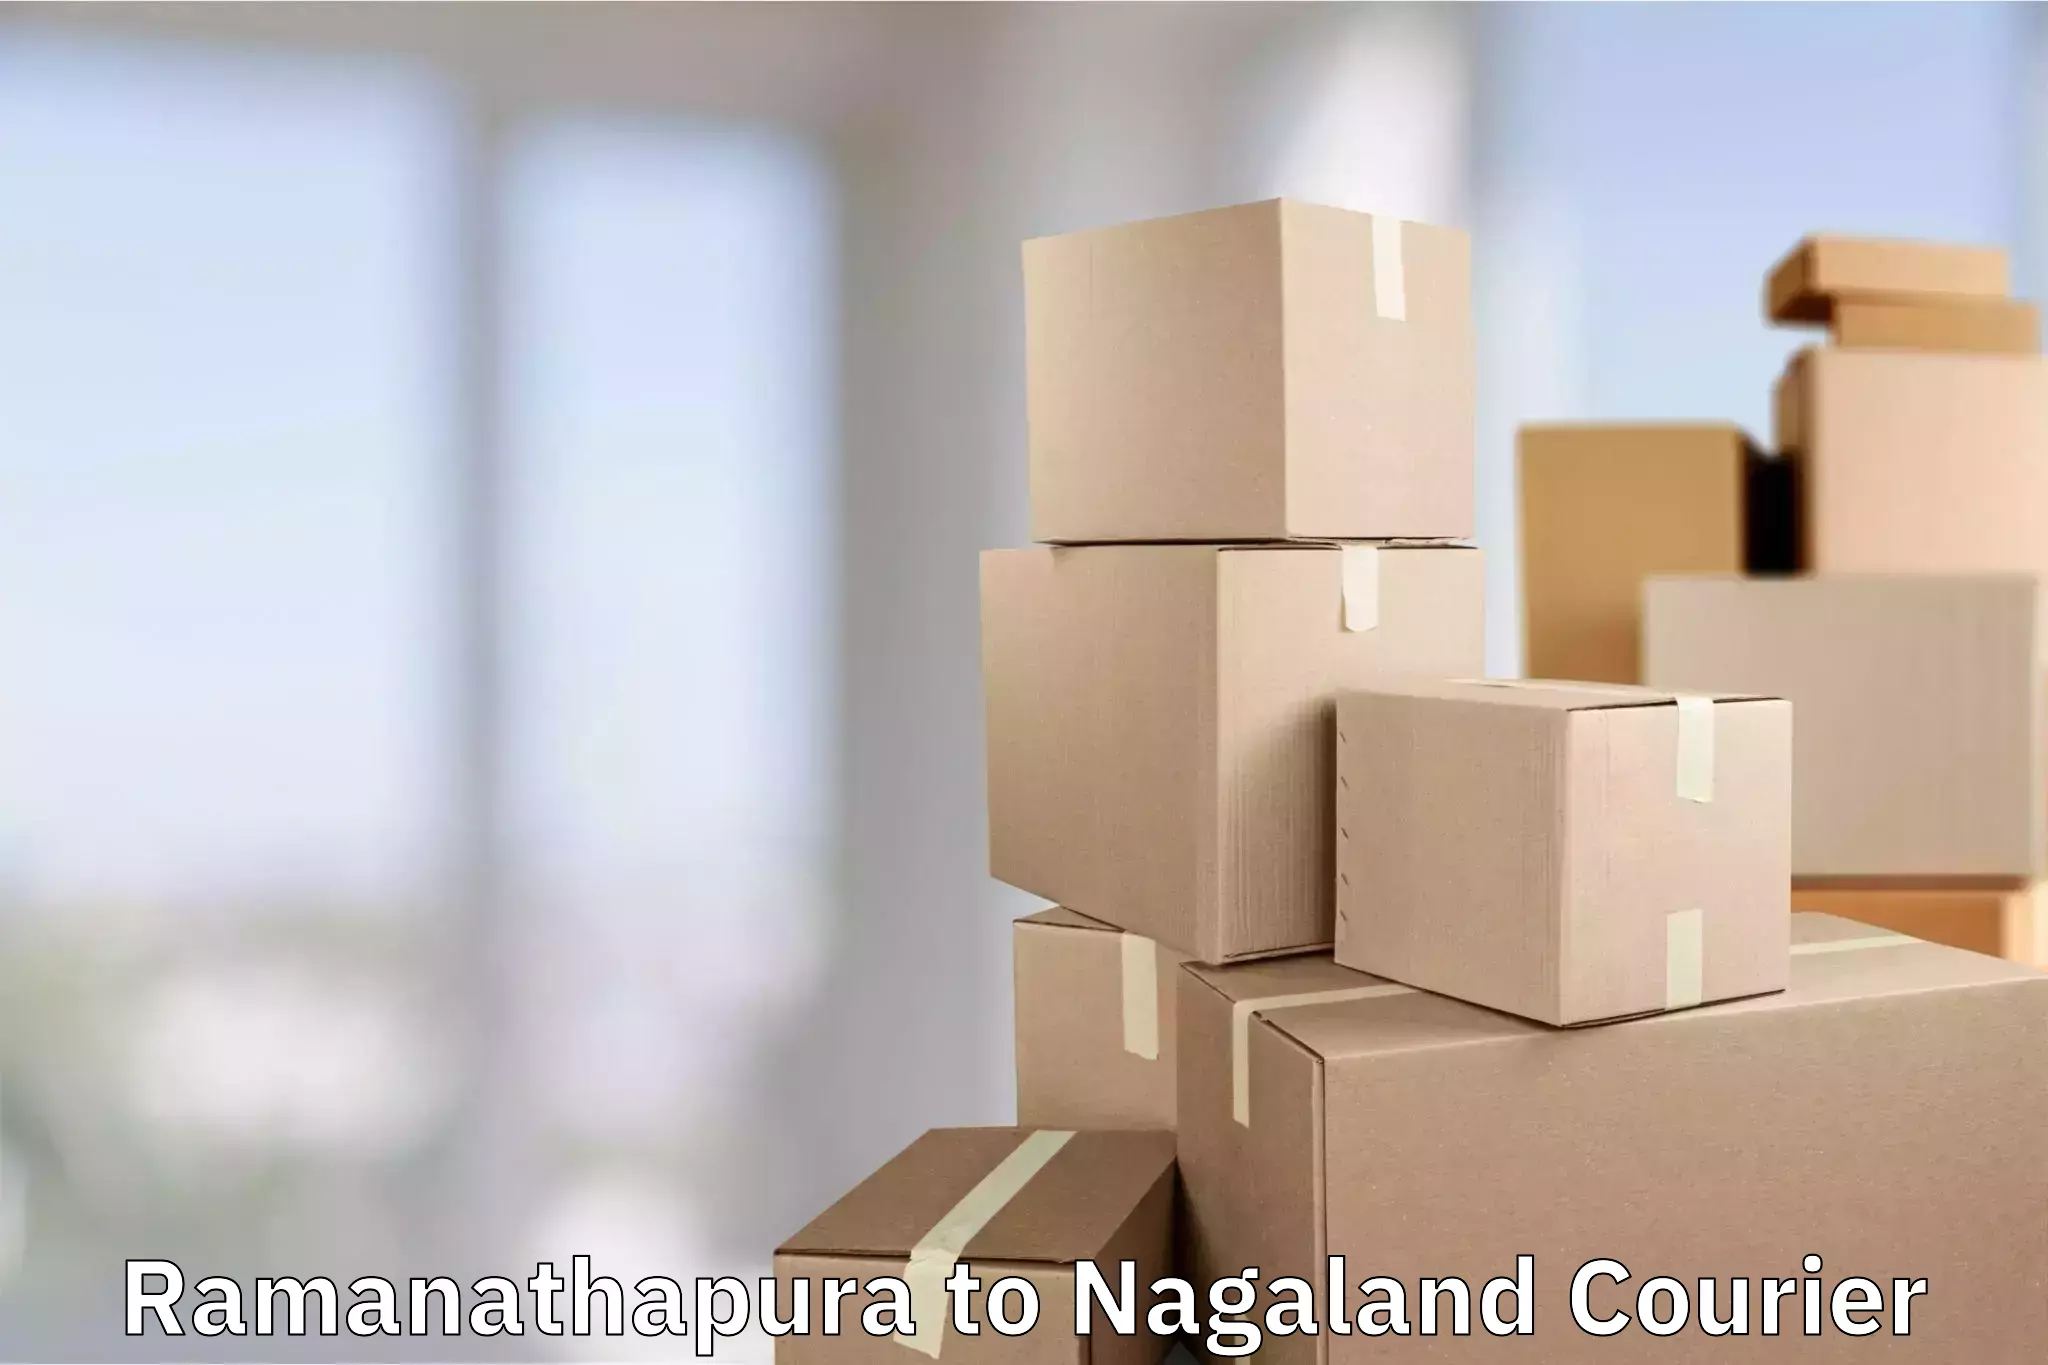 Luggage transport deals Ramanathapura to NIT Nagaland